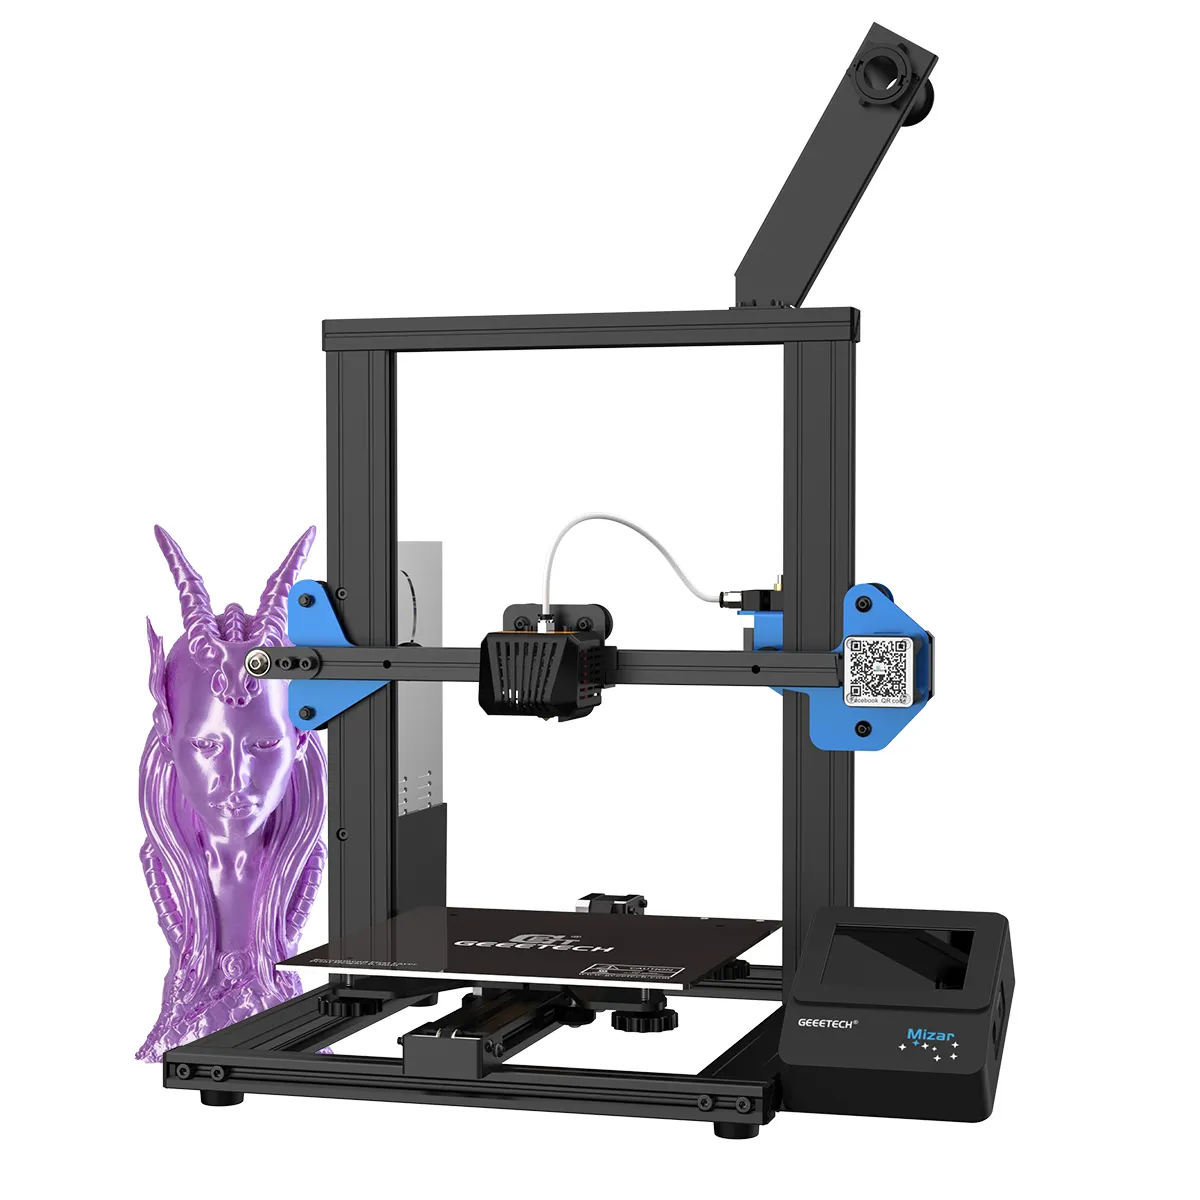 Geeetech Mizar 3D Printer DIY 3D Printer with 220x220x250mm TMC2208 silent printing